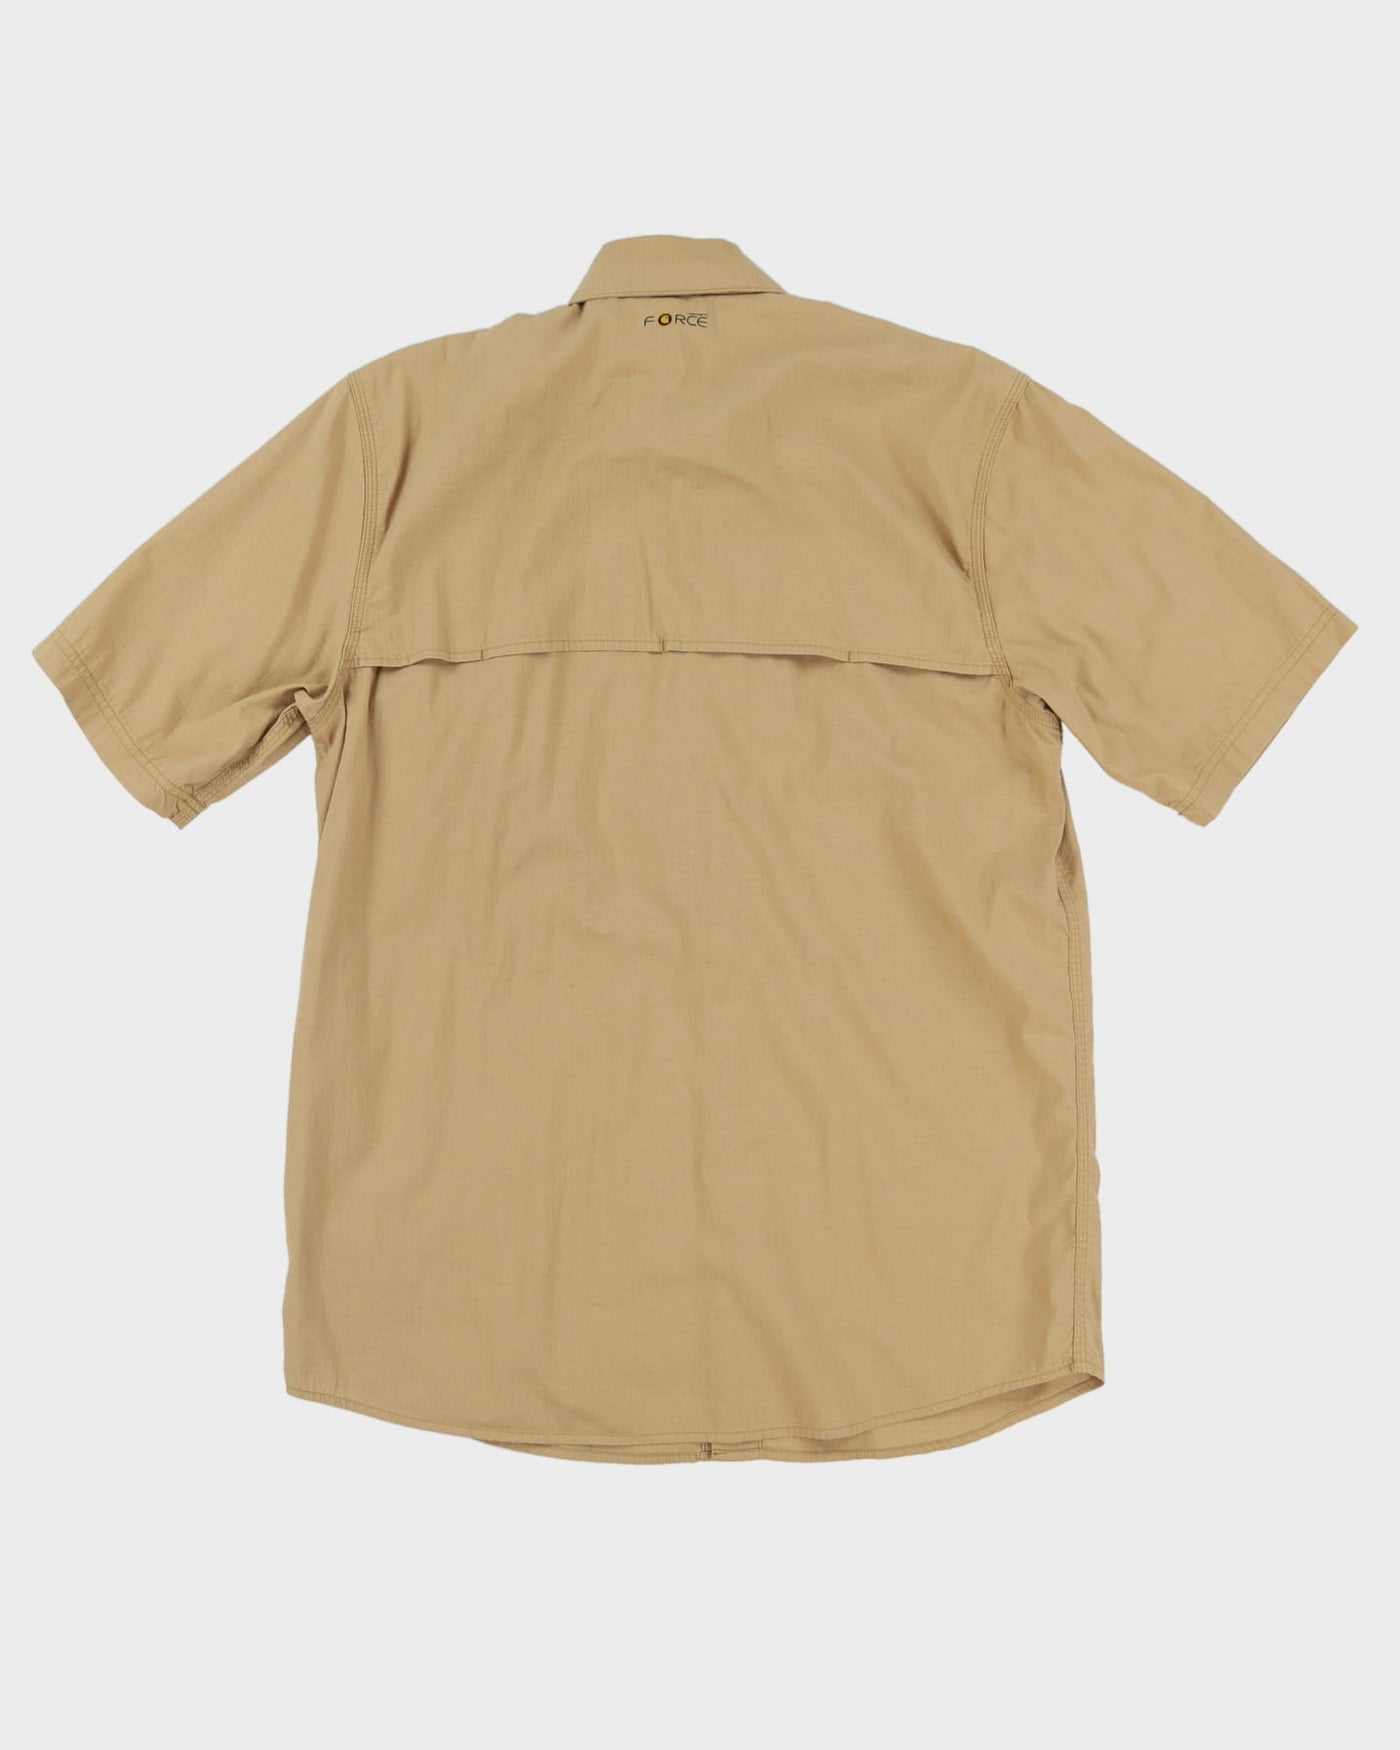 00s Carhartt Beige Button-Up Work Shirt - M